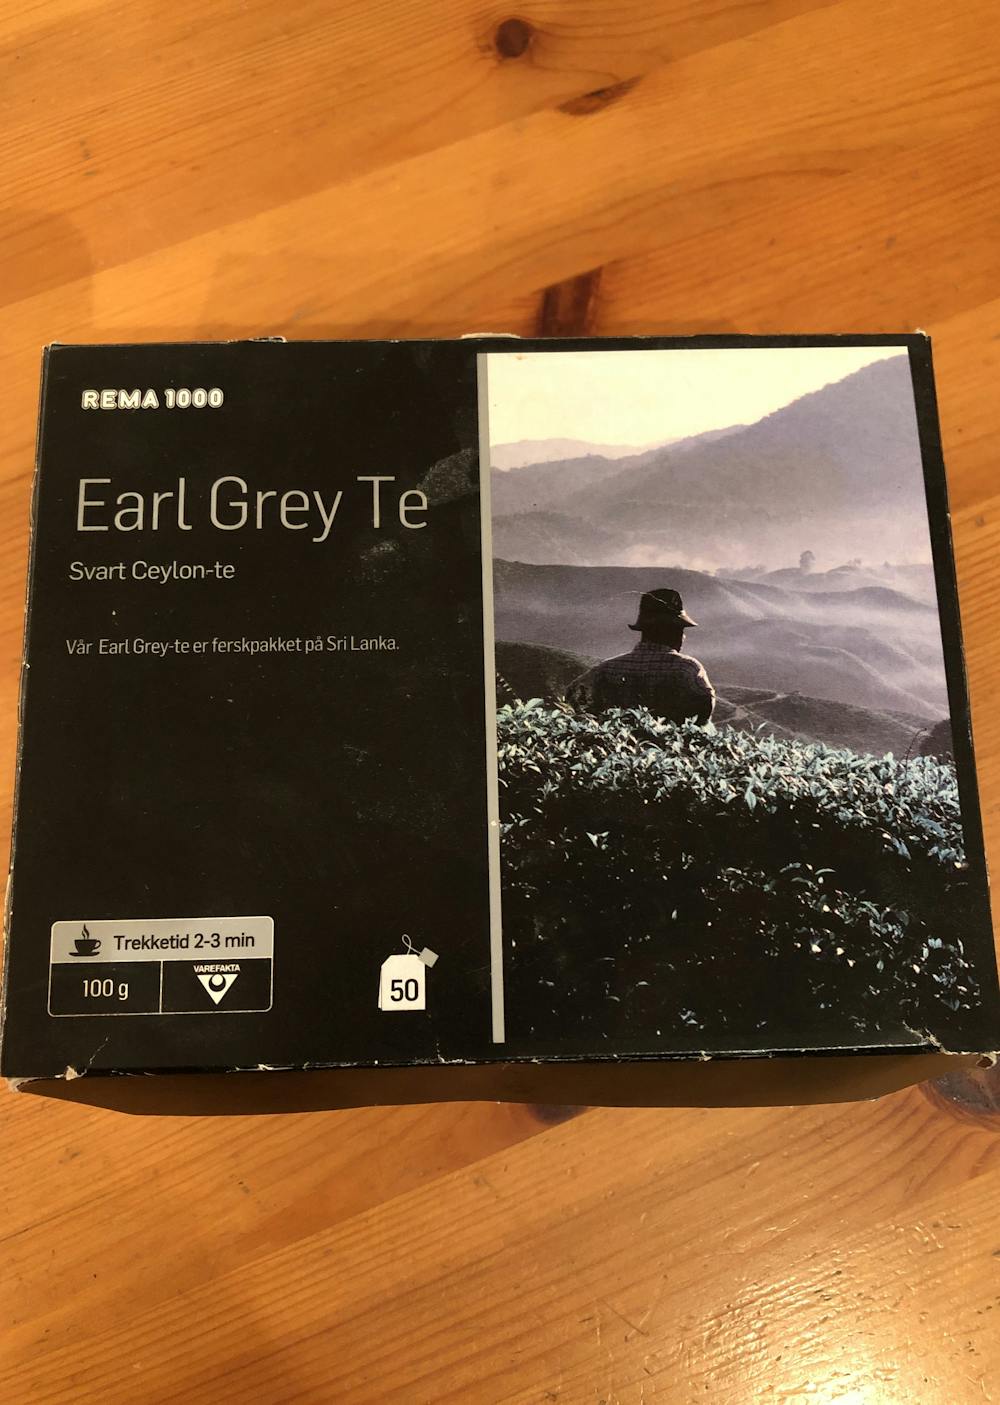 Earl grey te, Rema1000